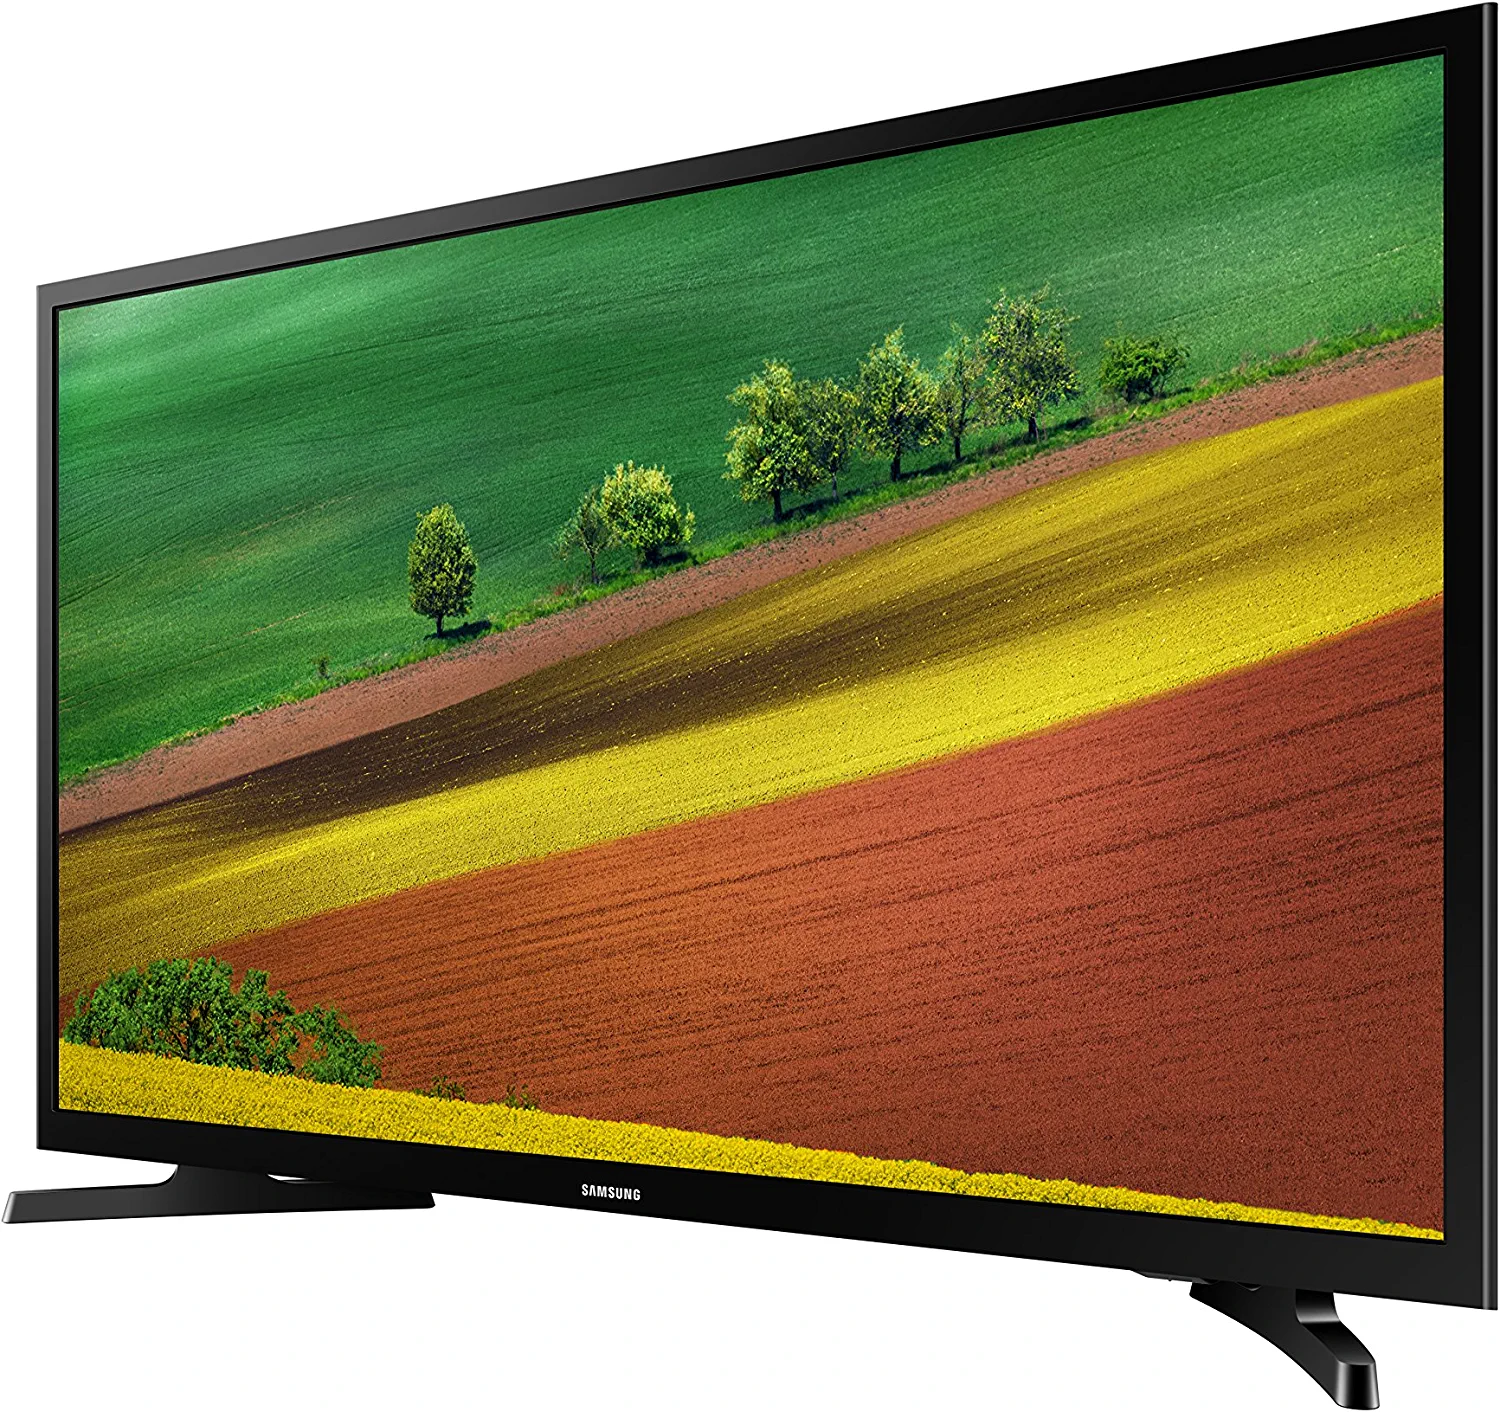 Samsung’s UN32M4500AFXZA 32″ 720p Smart LED TV